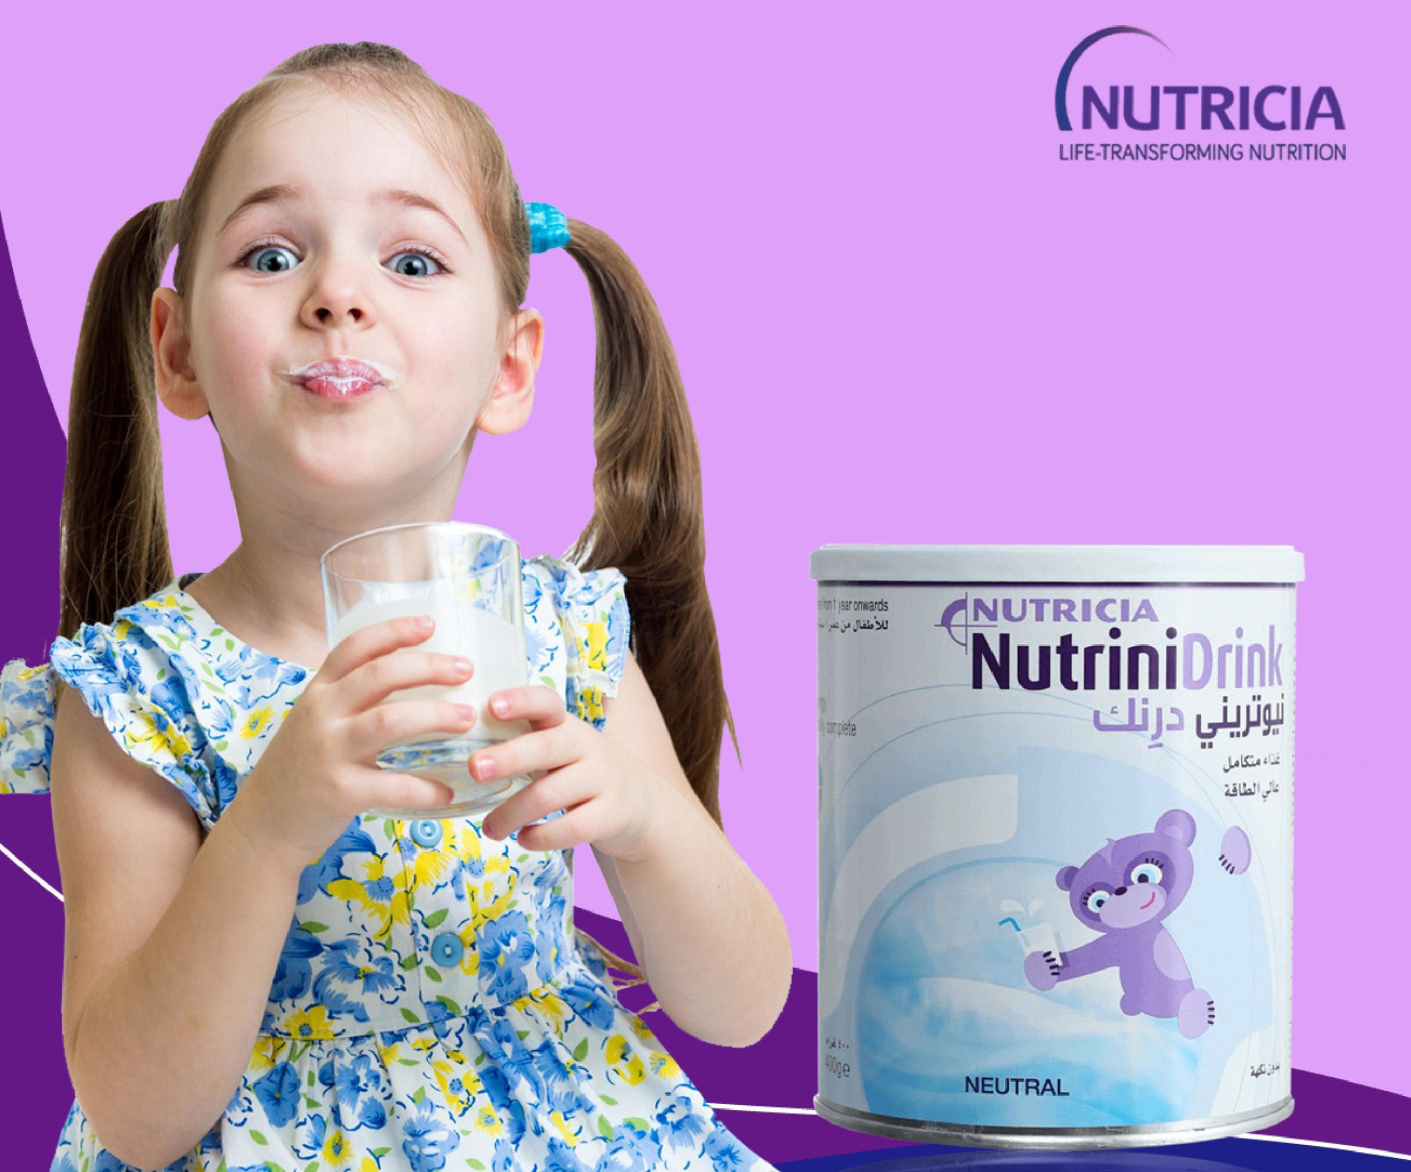 Những lưu ý khi chọn sữa cho trẻ suy dinh dưỡng - Ảnh 1.